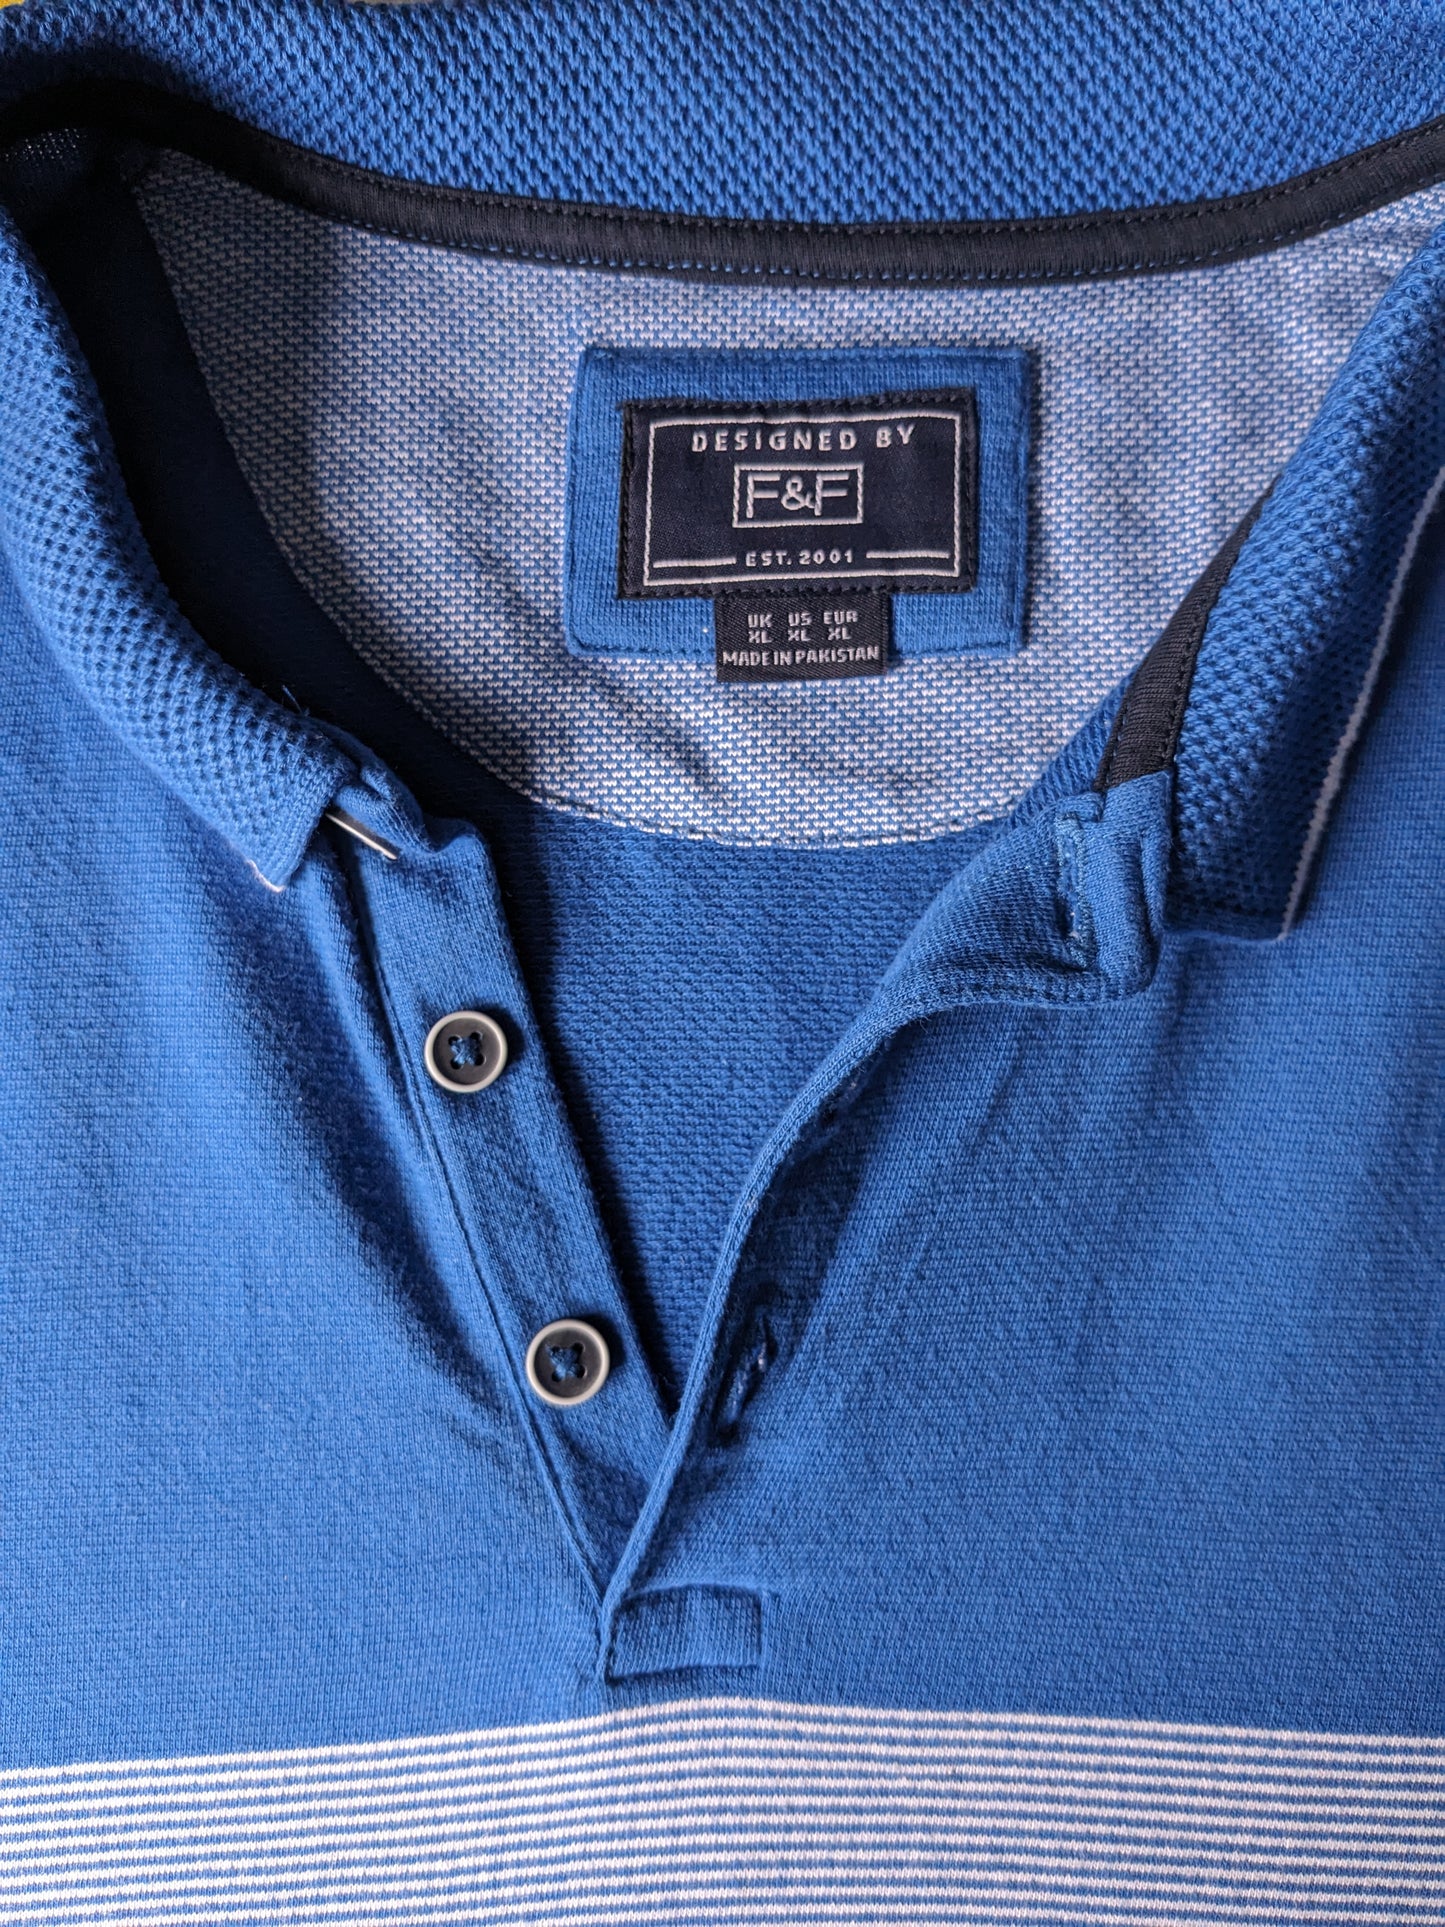 F&F Polo. Blue white colored. Size XL.